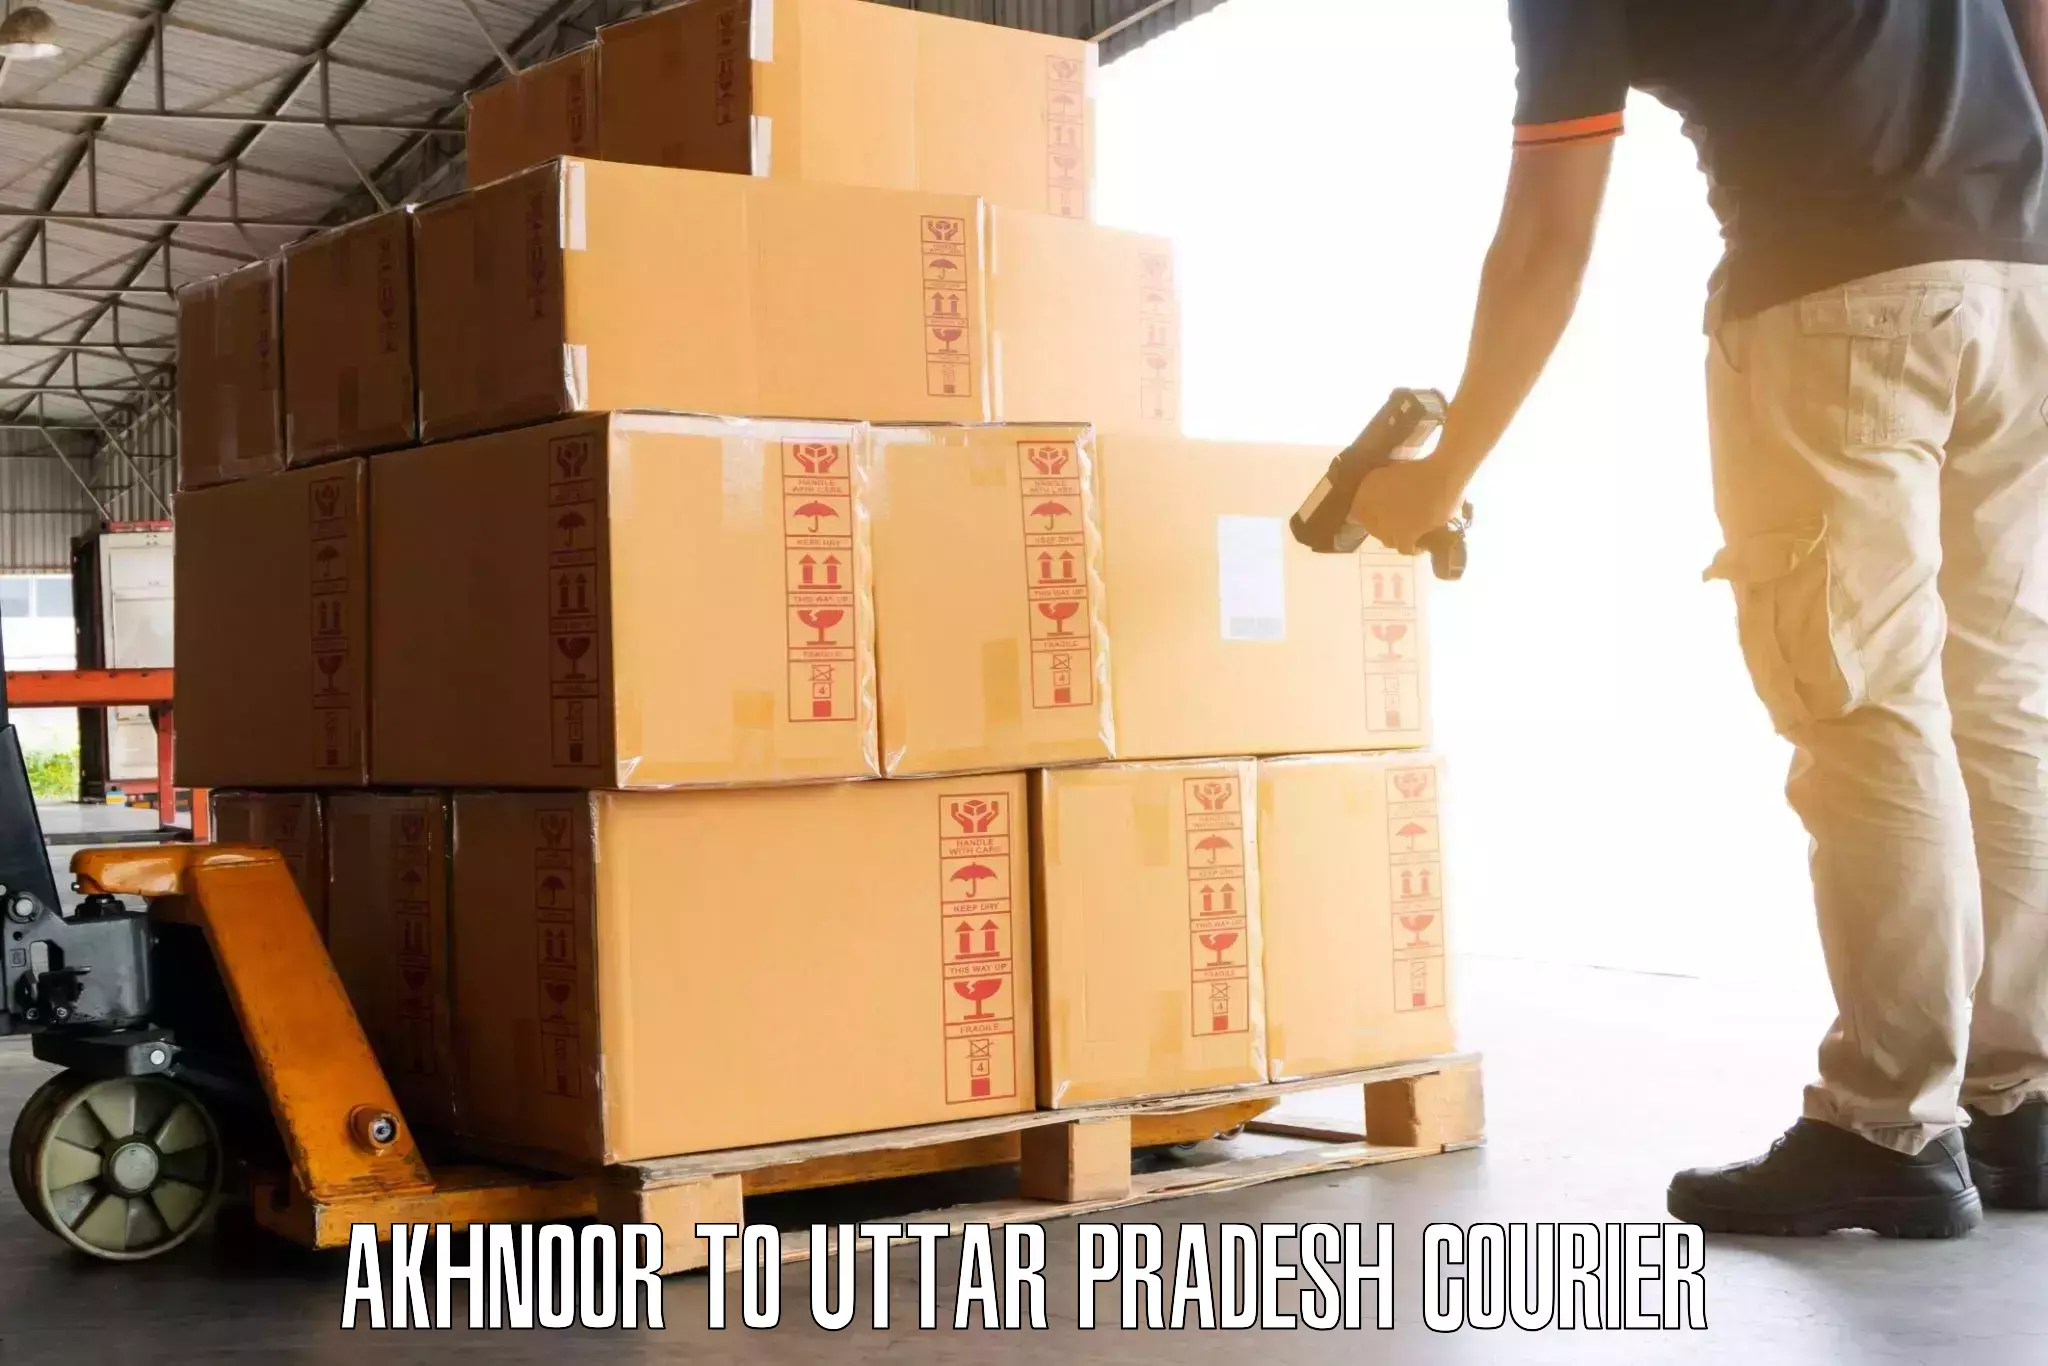 Luggage shipment tracking Akhnoor to Uttar Pradesh